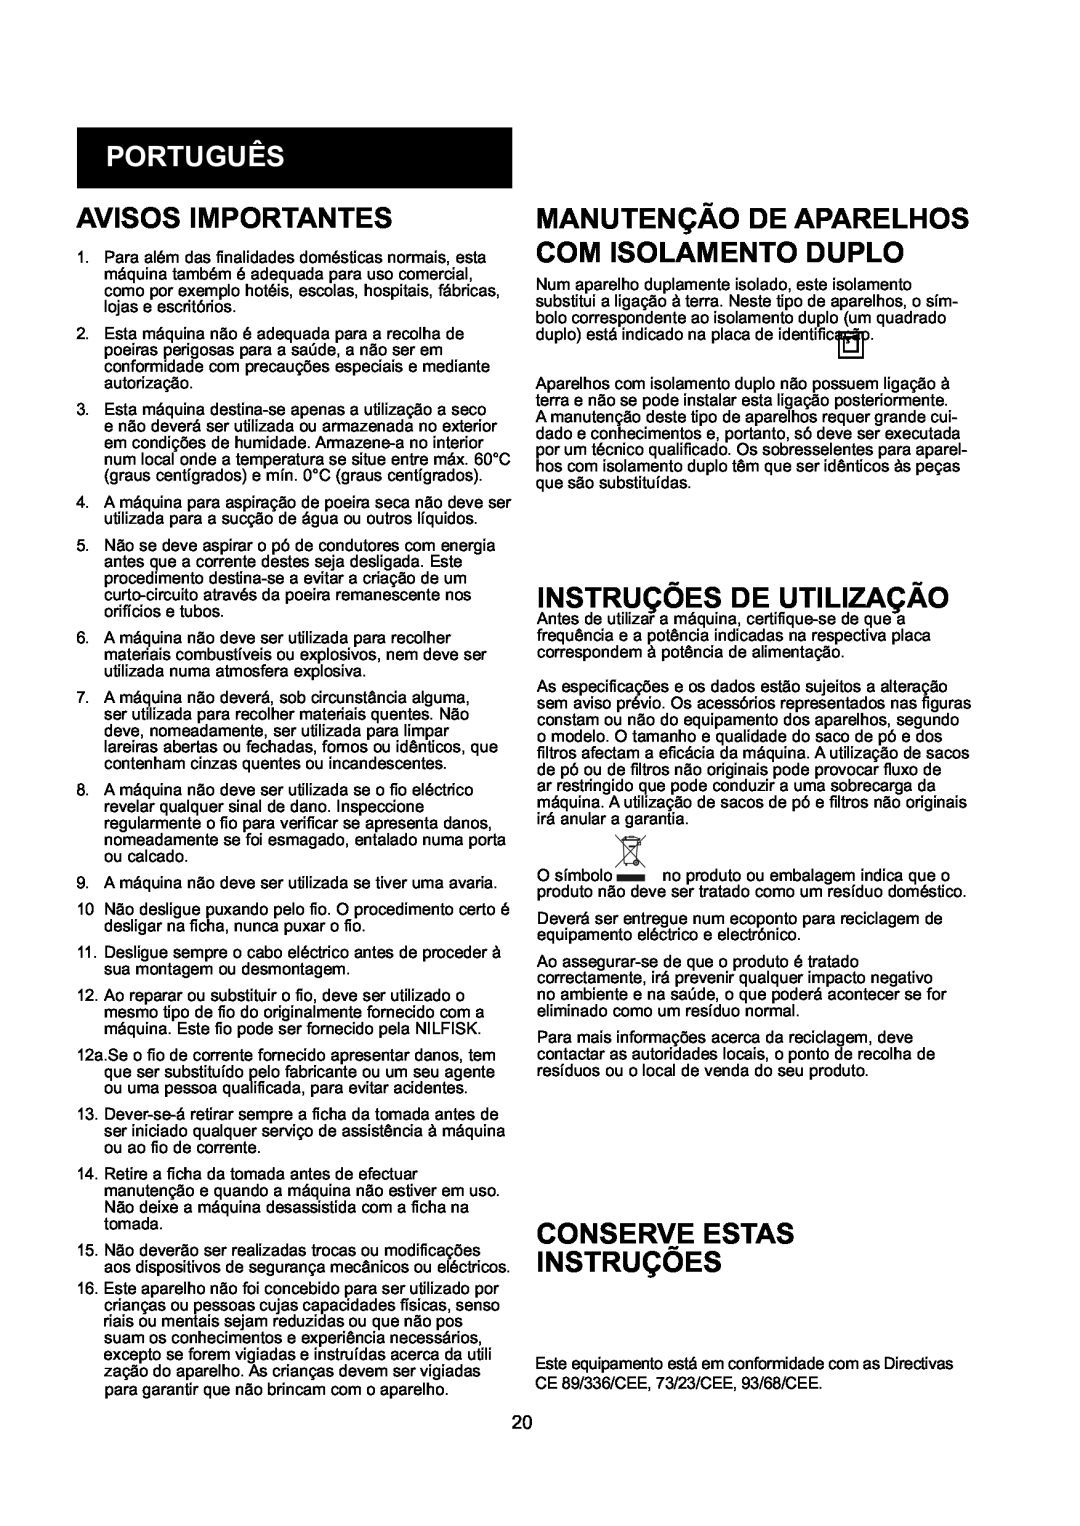 Nilfisk-ALTO GD 10 Back, GD 5 Back manual Português, Avisos Importantes, Manutenção De Aparelhos Com Isolamento Duplo 